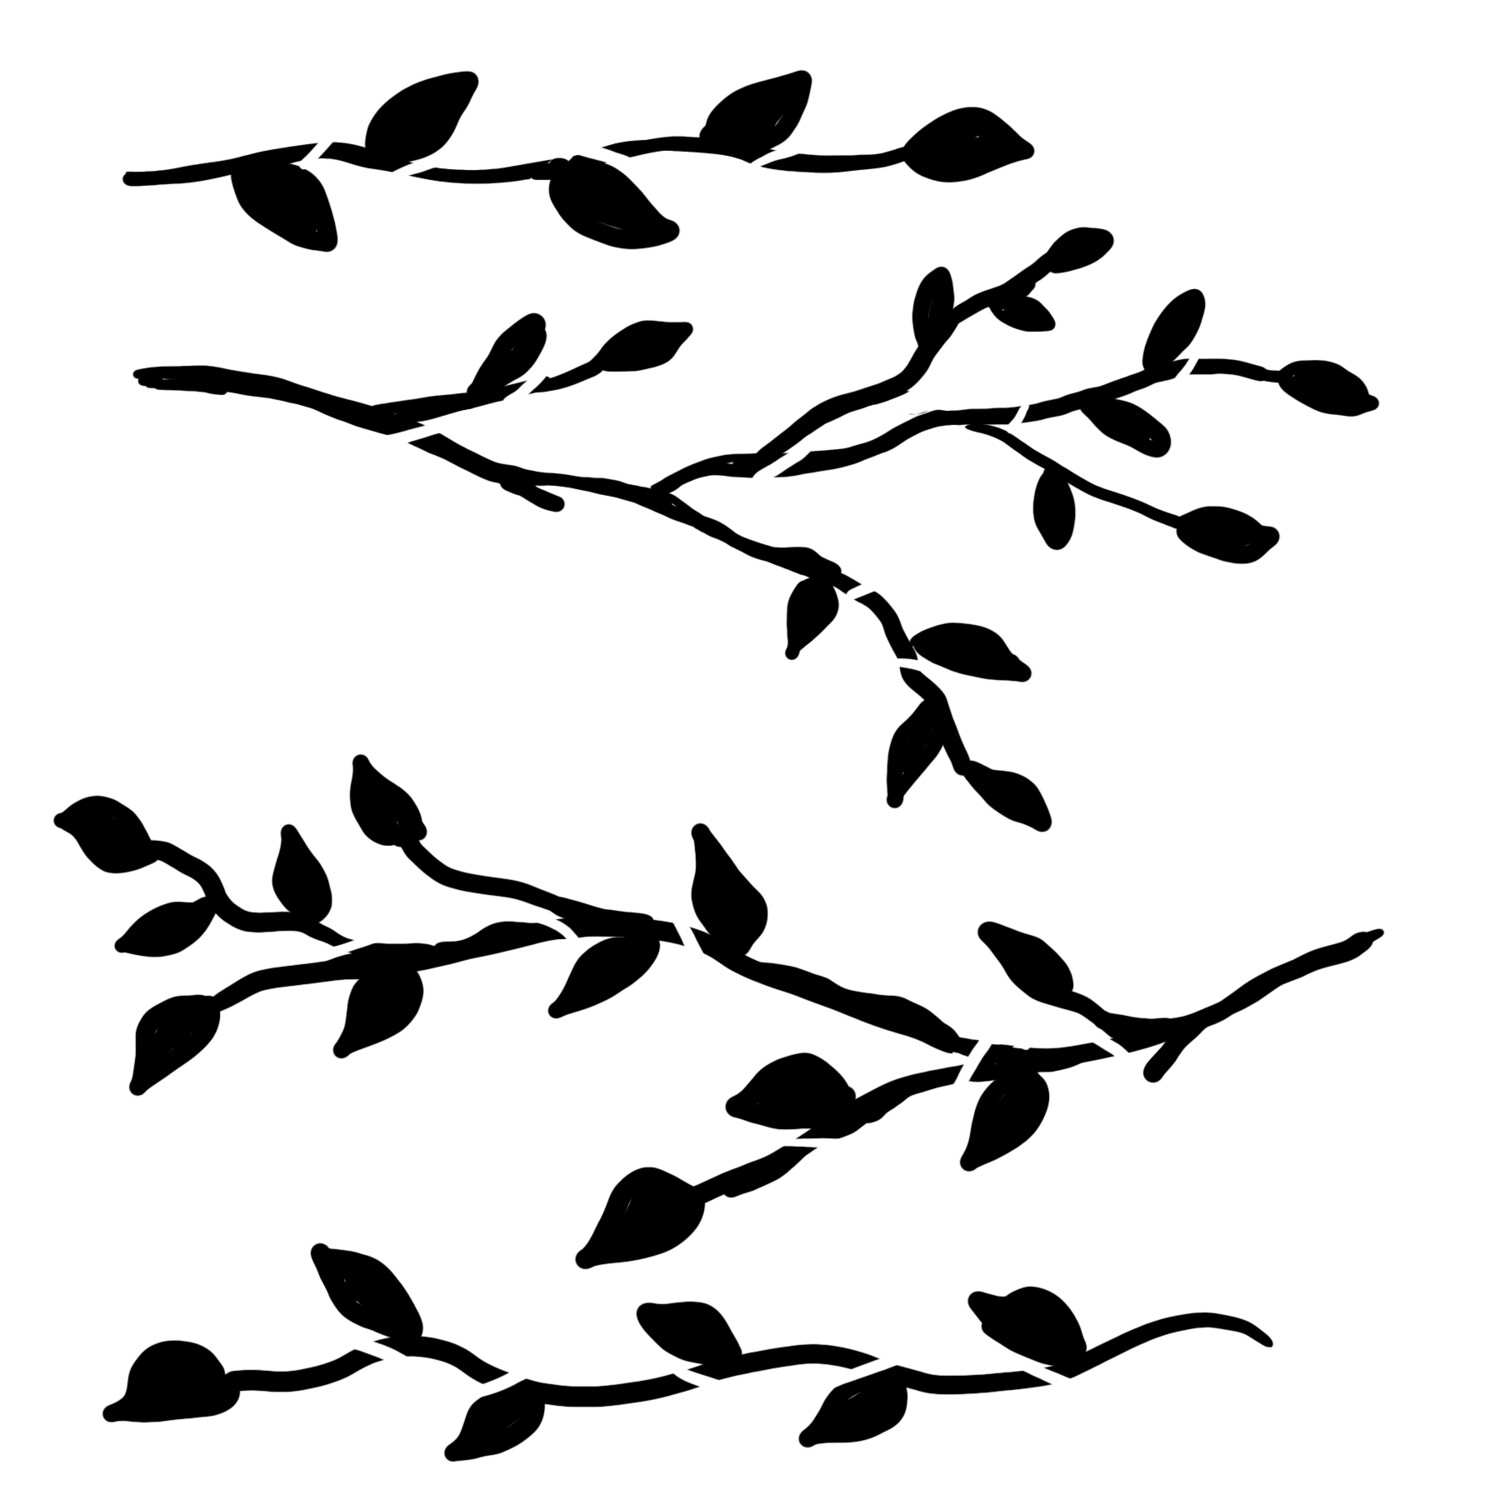 Simple Branches stencil 12x12